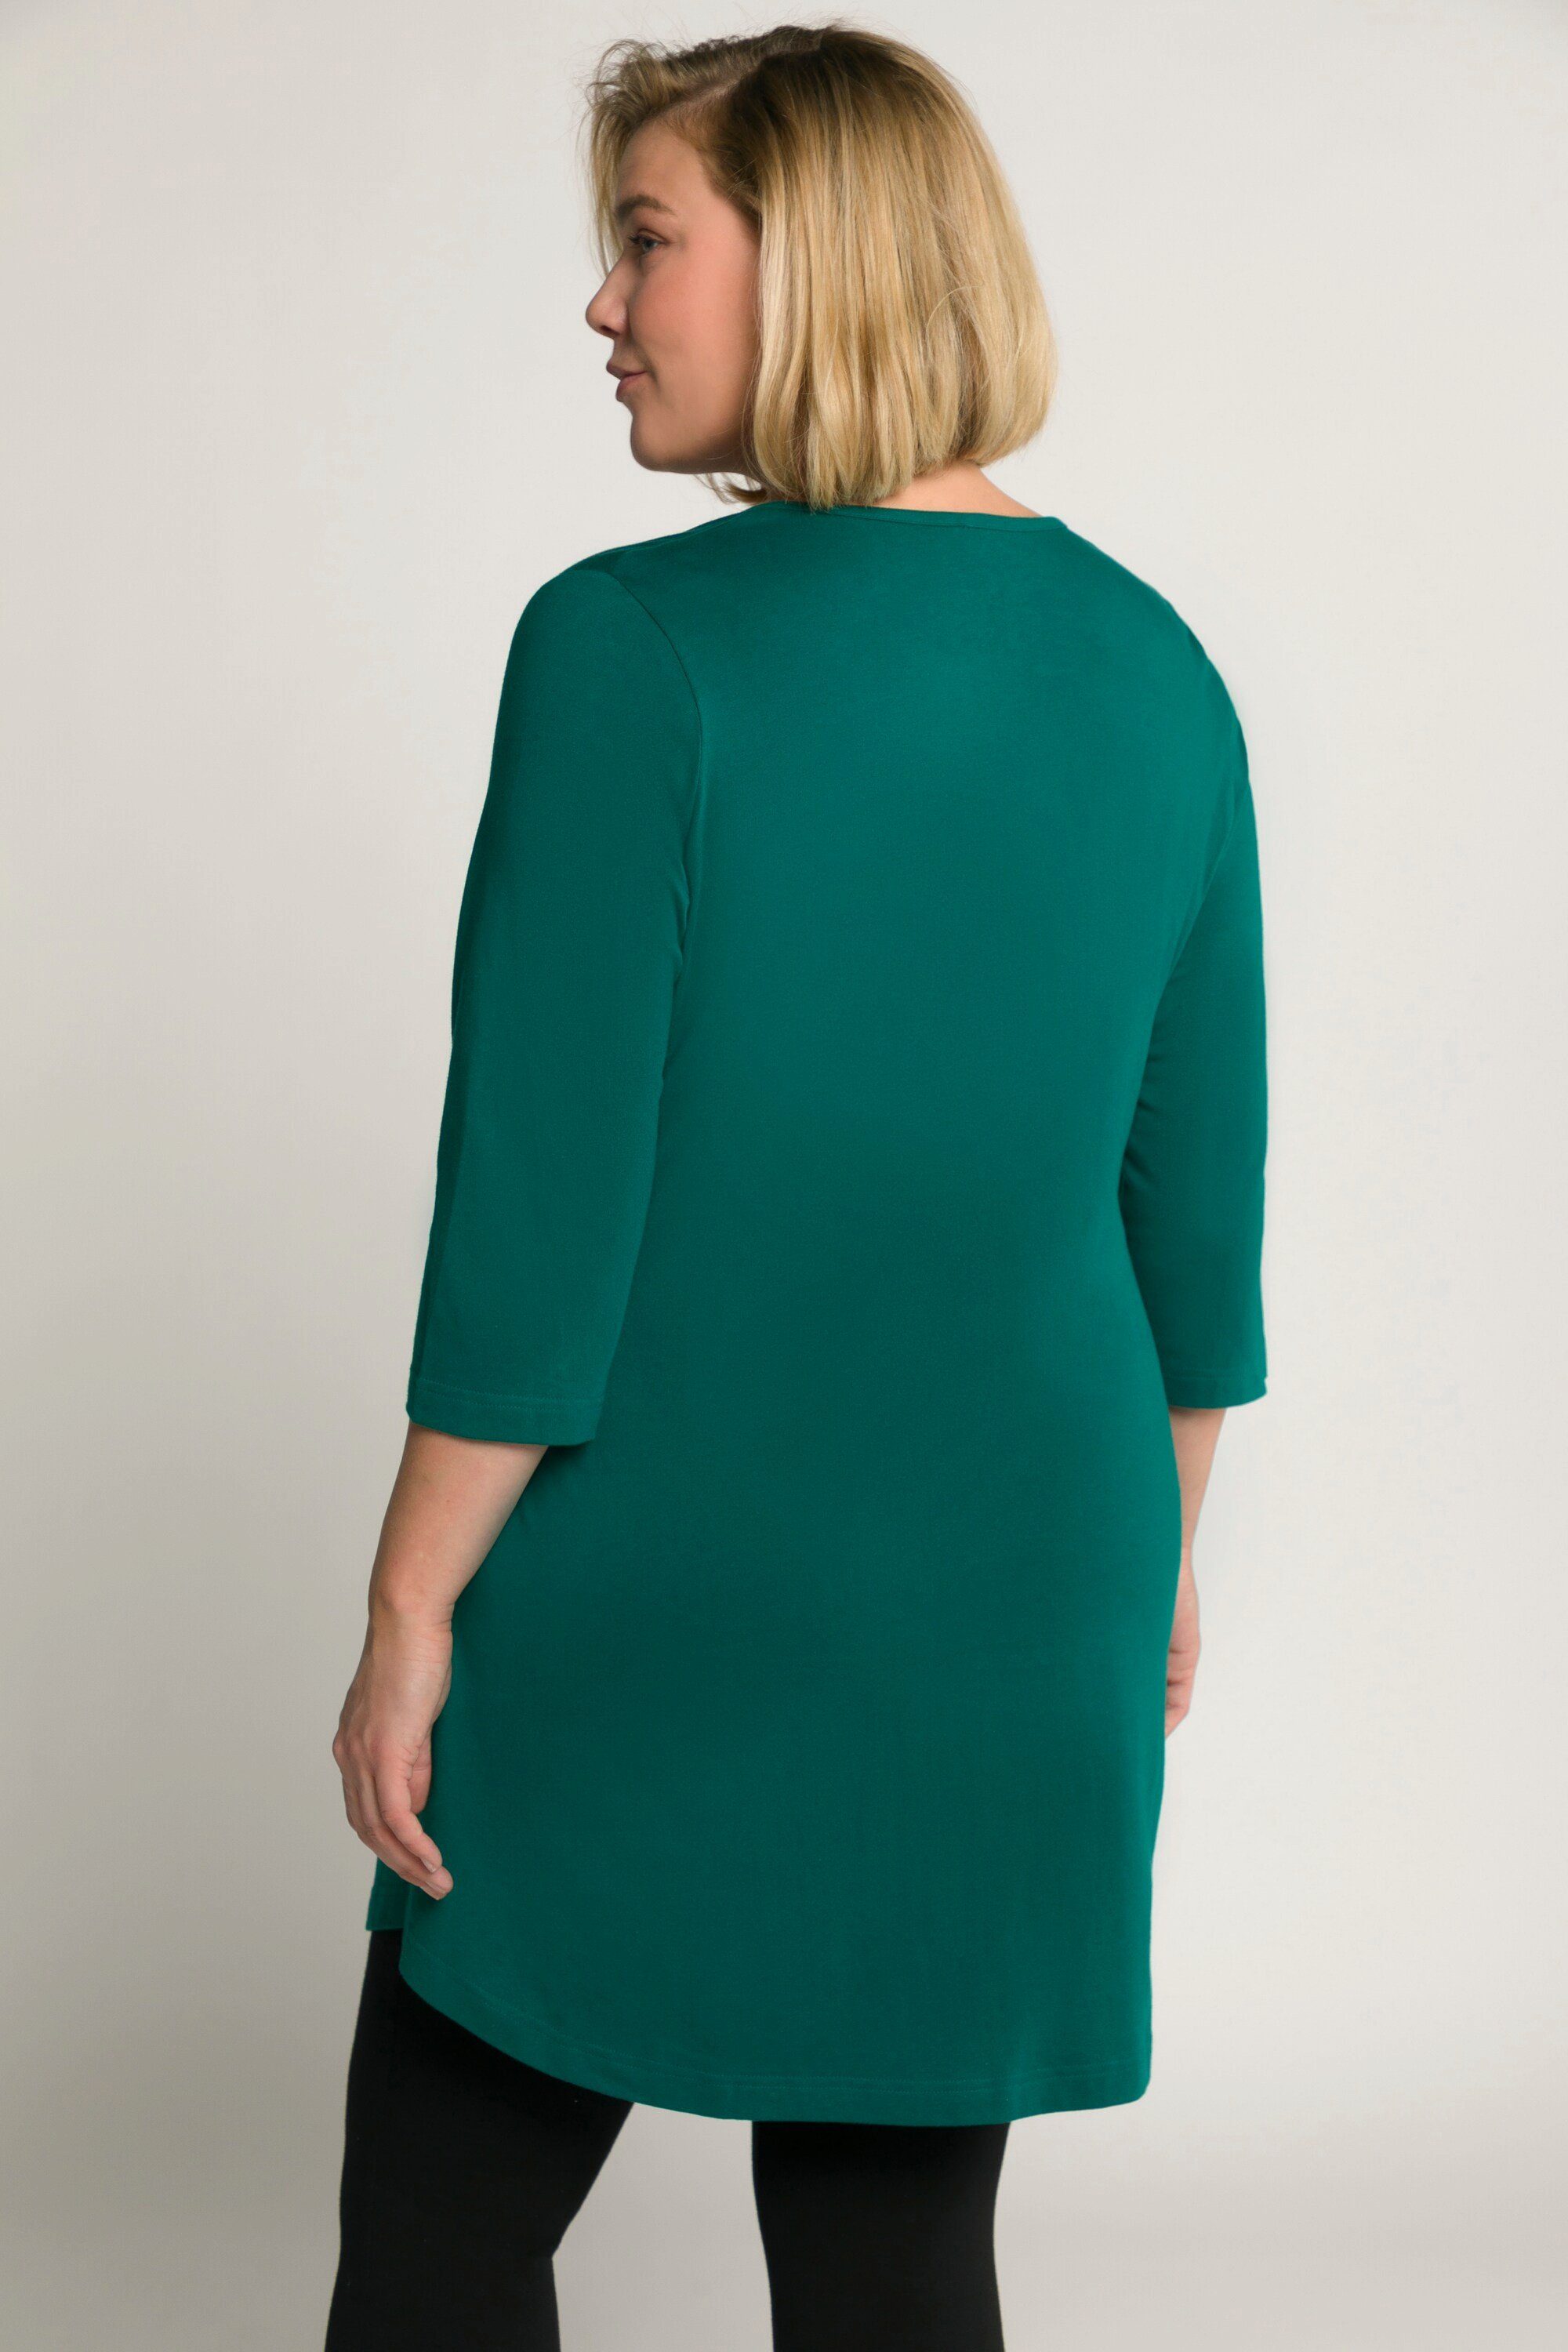 grün 3/4-Arm Taschen Ulla Popken Longshirt Tunika-Ausschnitt Longshirt